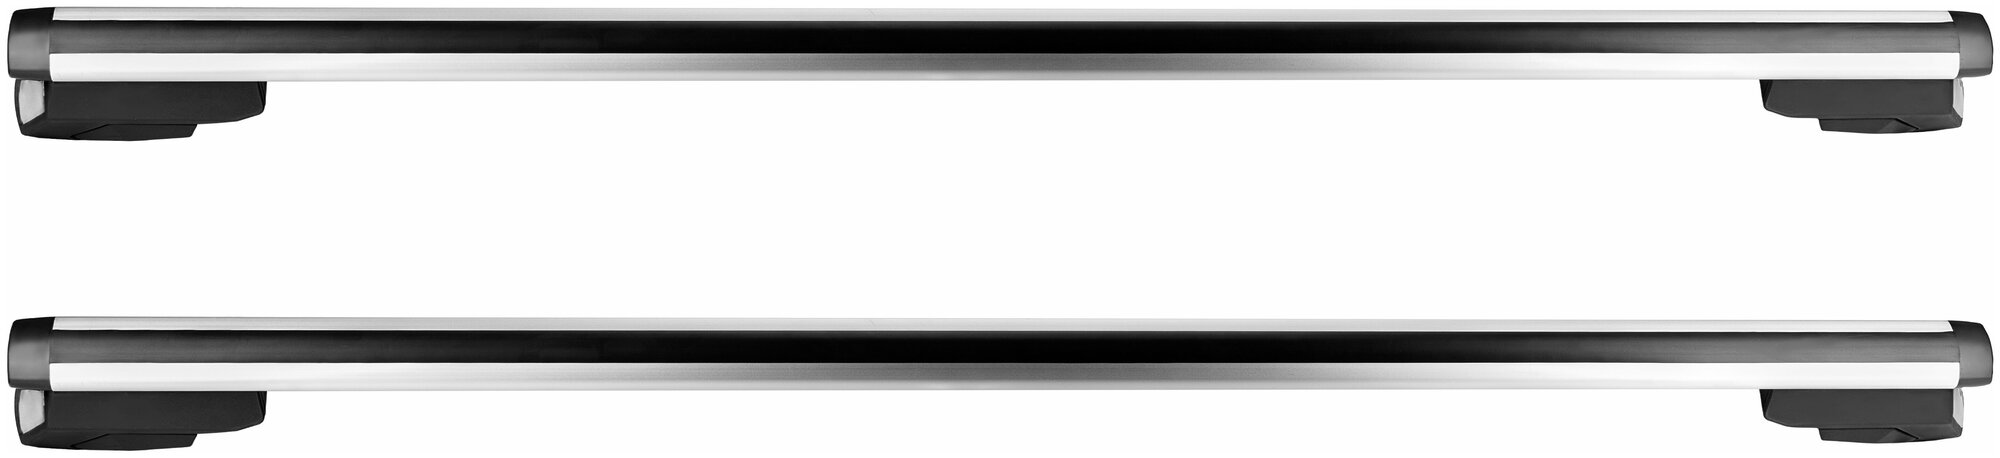 Багажник ED ARGO на стандартные рейлинги SsangYong Rexton / СсангЙонг Рекстон Джип 5дв. 2000-2012 аэро поперечины серебро, без замка